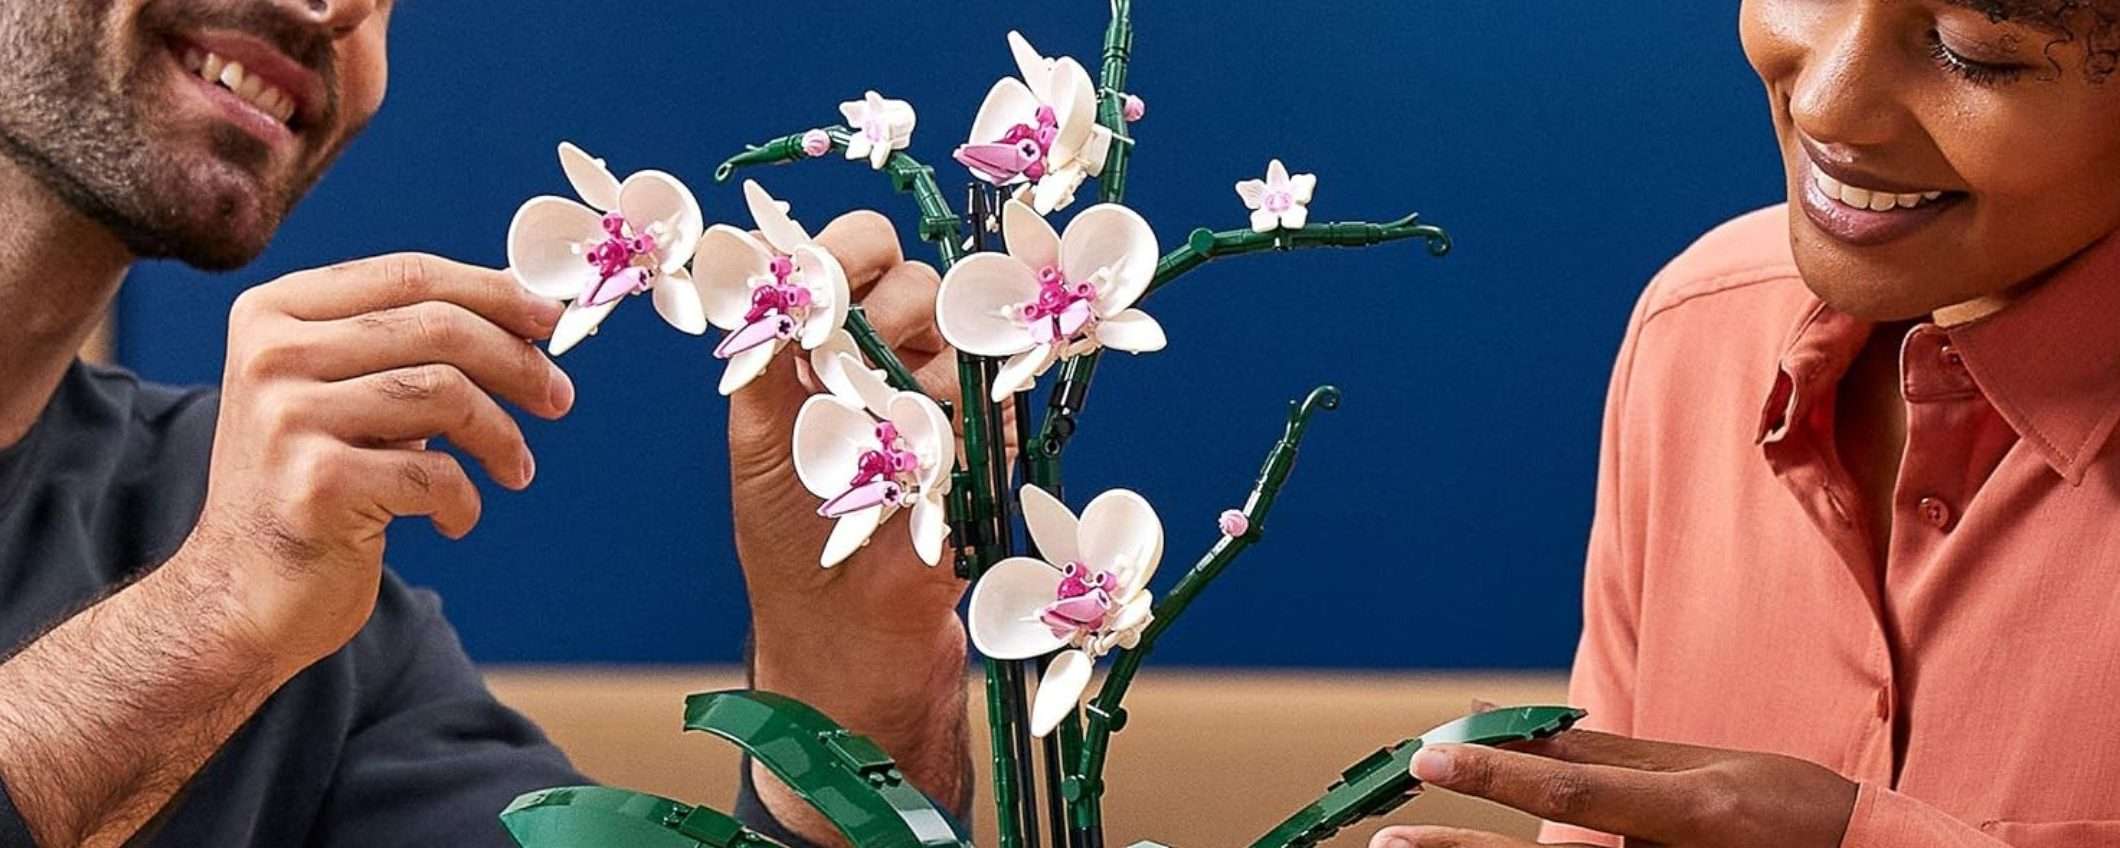 LEGO Orchidea in offerta (-20%): regalo PERFETTO per la Festa della Mamma